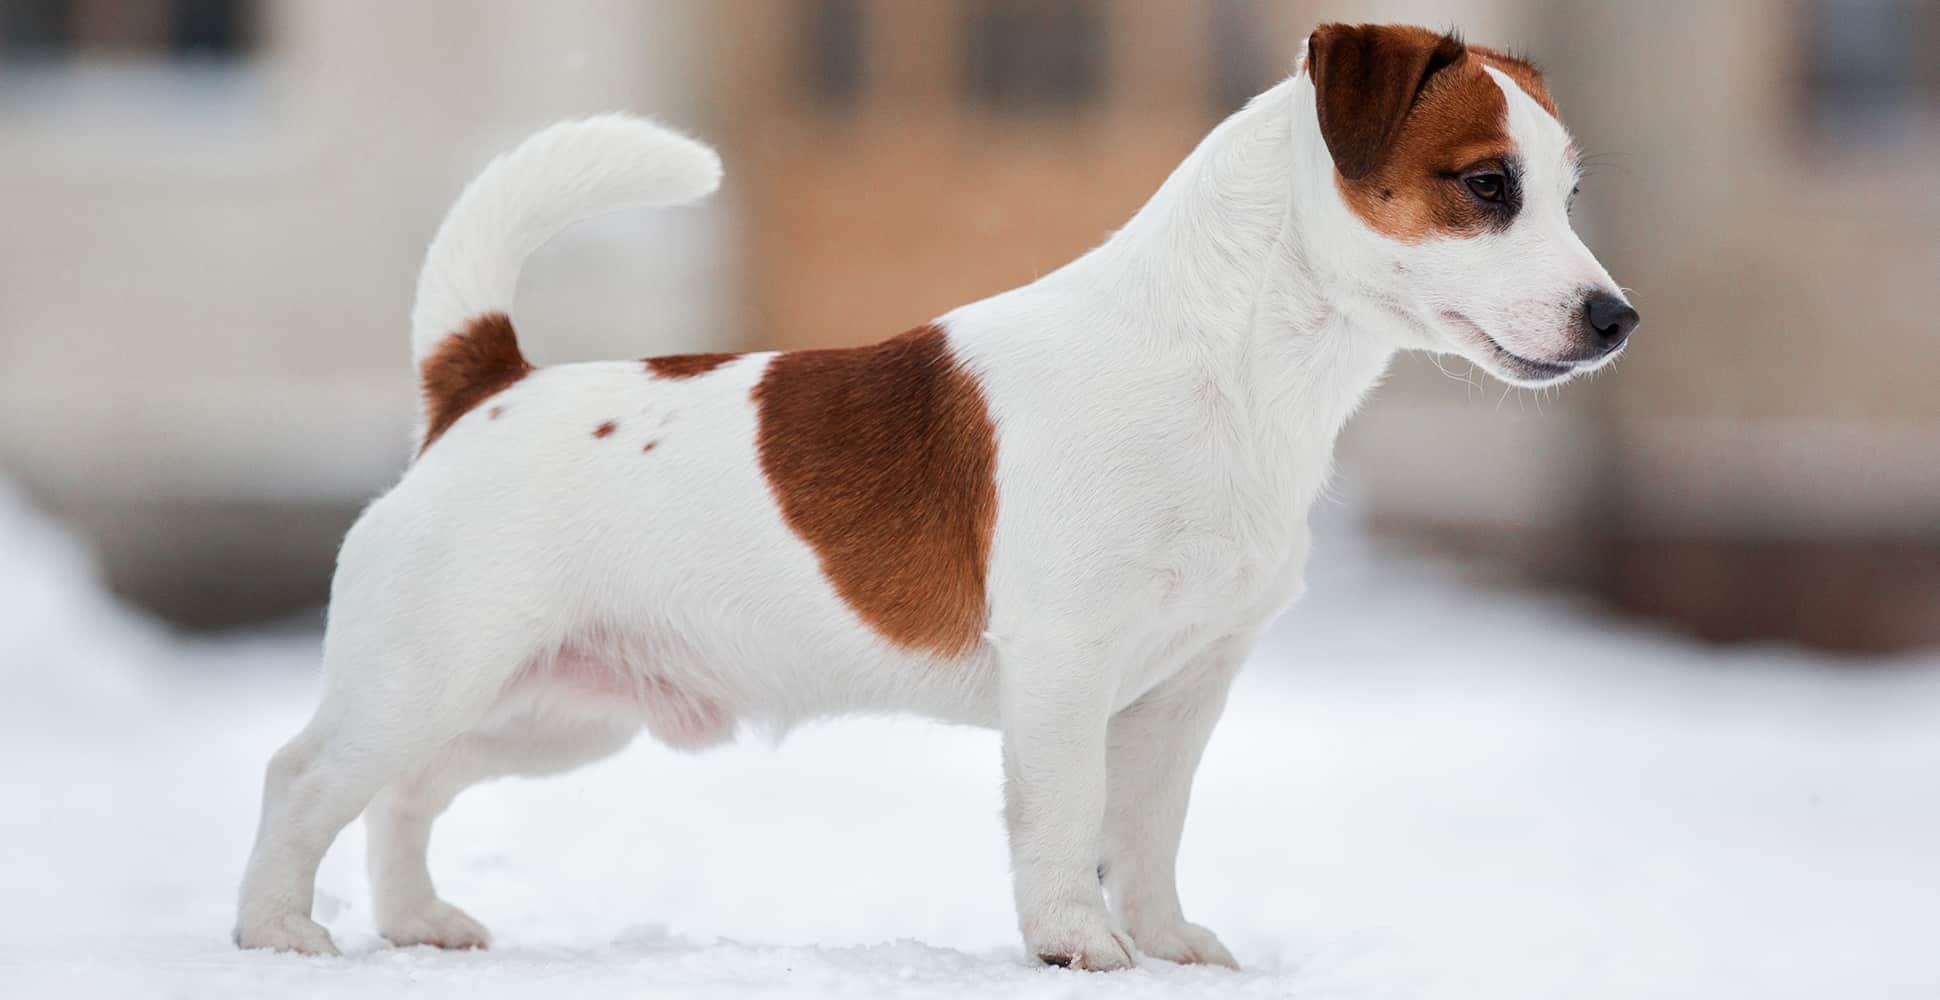 Cachorro mini: conheça o Jack Russell Terrier; um cão super enérgico